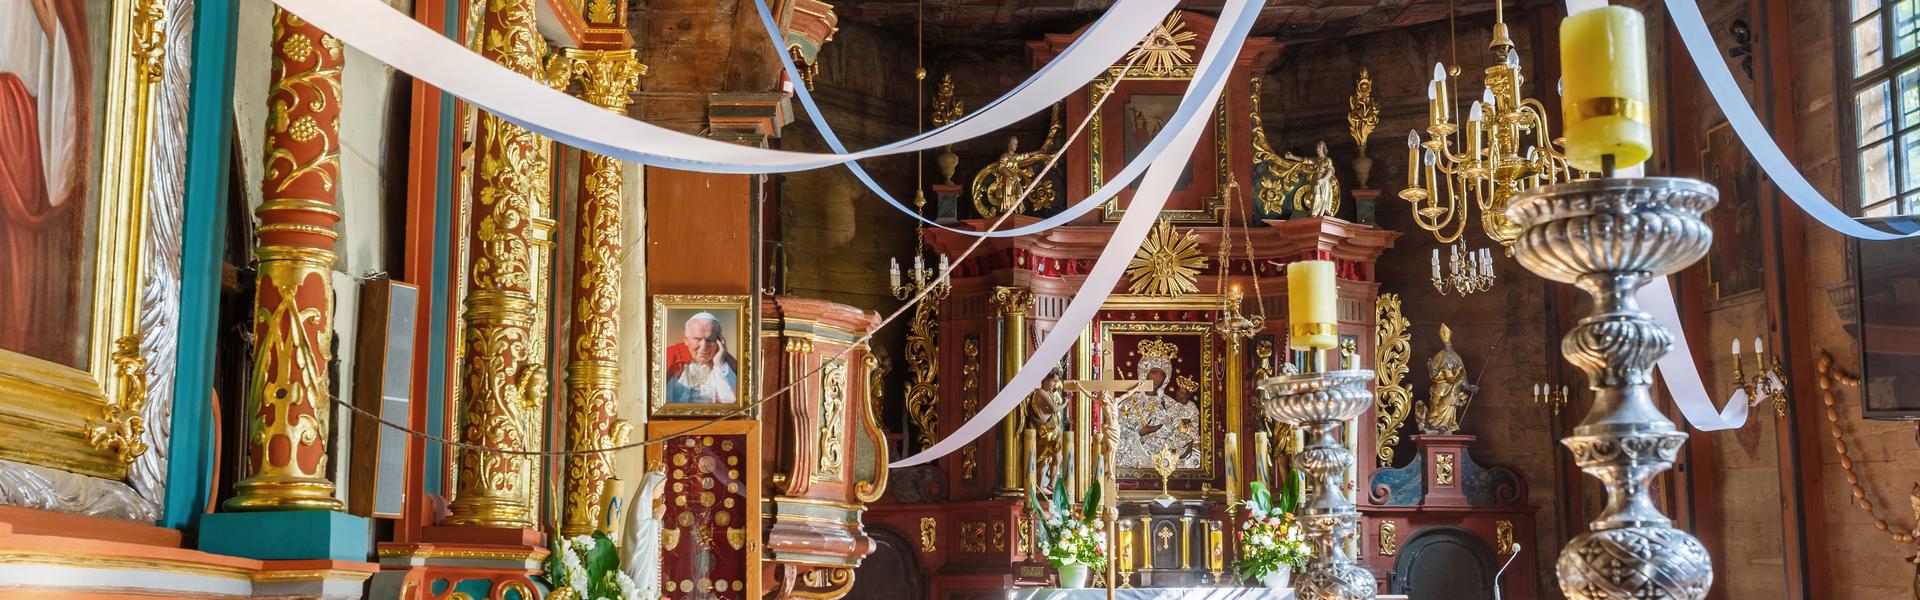 Wnętrze kościoła. Ołtarz główny w kolorze czerwieni i złota z obrazem Matki Boskiej. Po lewej stronie ambona. Dużo kwiatów, kościół jest przystrojony białymi i błękitnymi wstążkami, które z sufitu rozchodzą się promieniście po nawie.